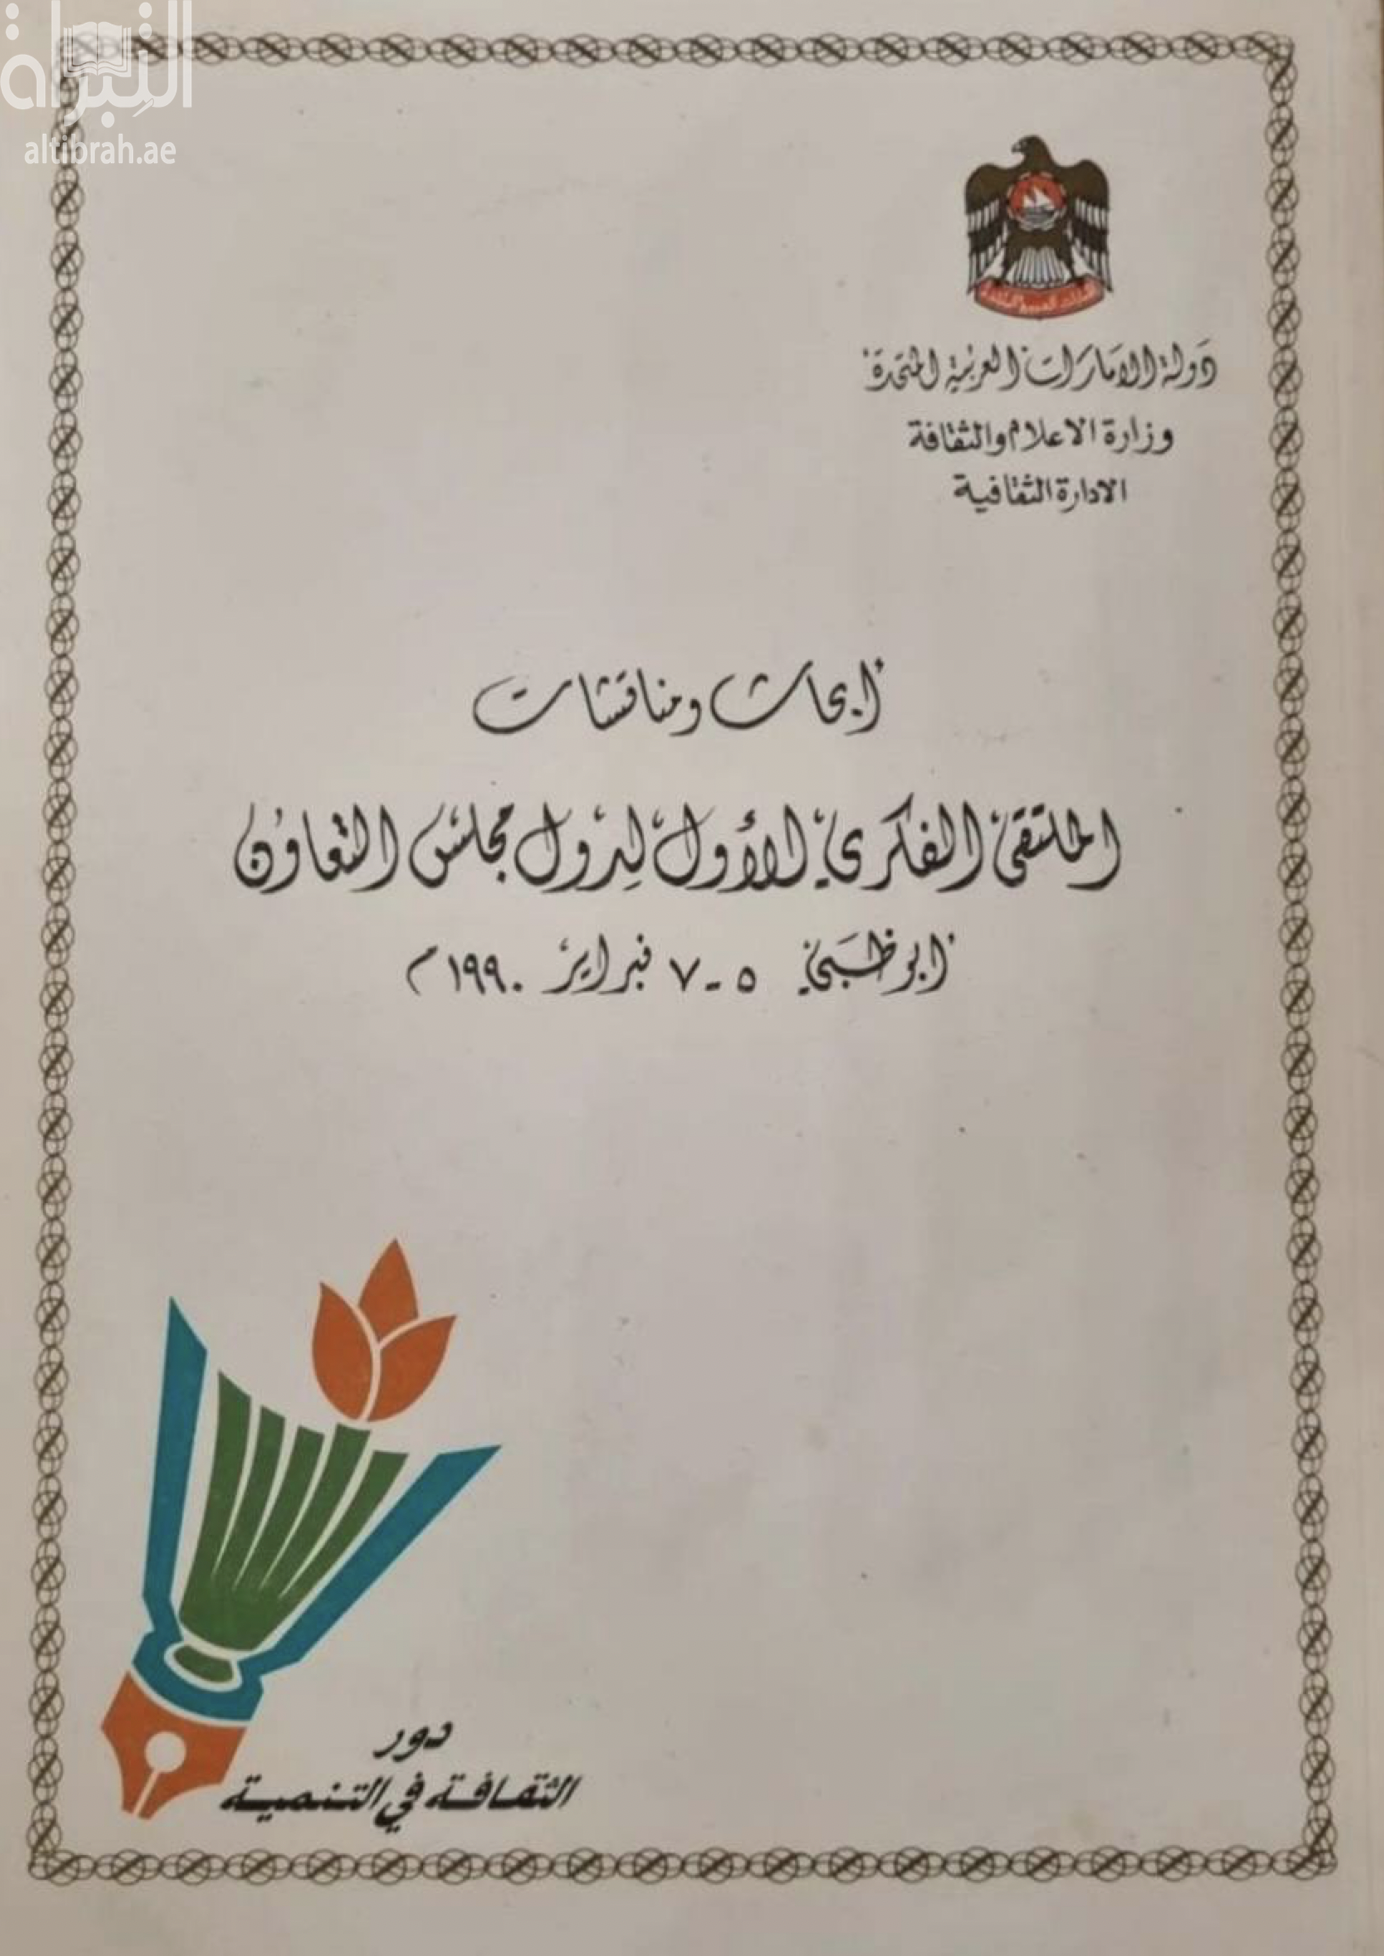 غلاف كتاب أبحاث الملتقى الفكري الأول لدول مجلس التعاون لدول الخليج العربية، أبو ظبي 5-7 فبراير 1990 م : دور الثقافة في التنمية